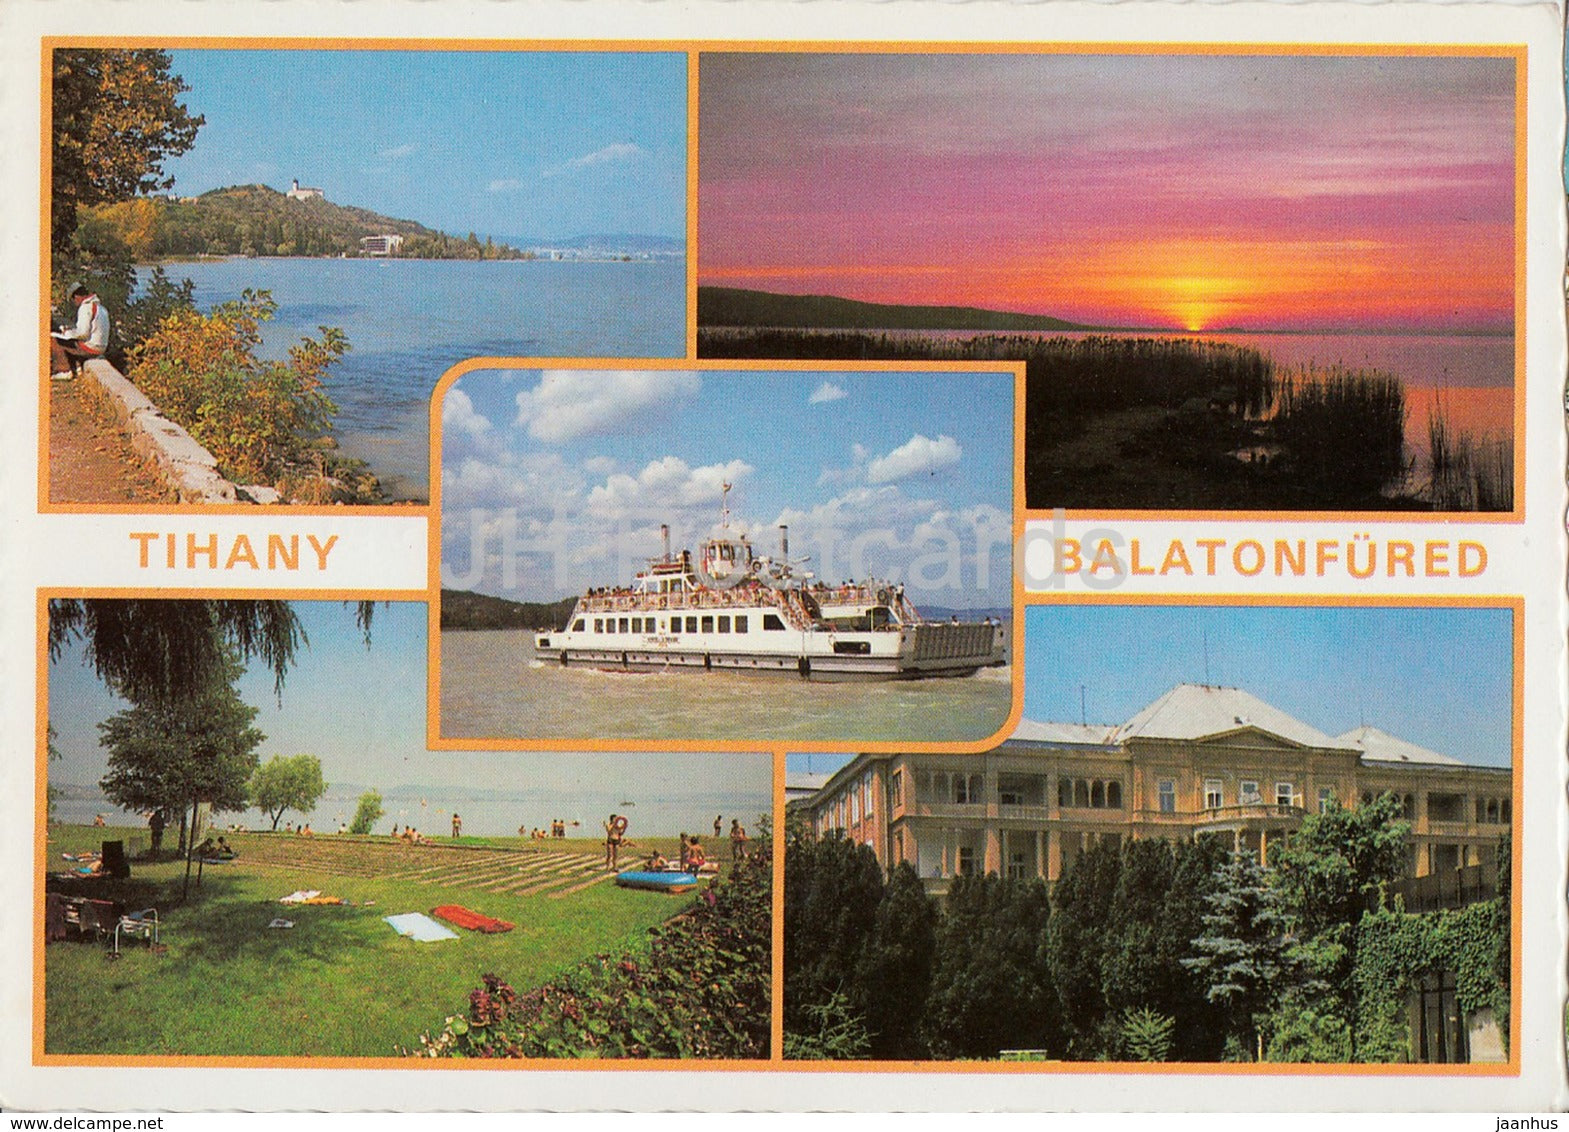 Balaton - Tihany - Balatonfured - boat - lake - multiview - 1987 - Hungary - used - JH Postcards